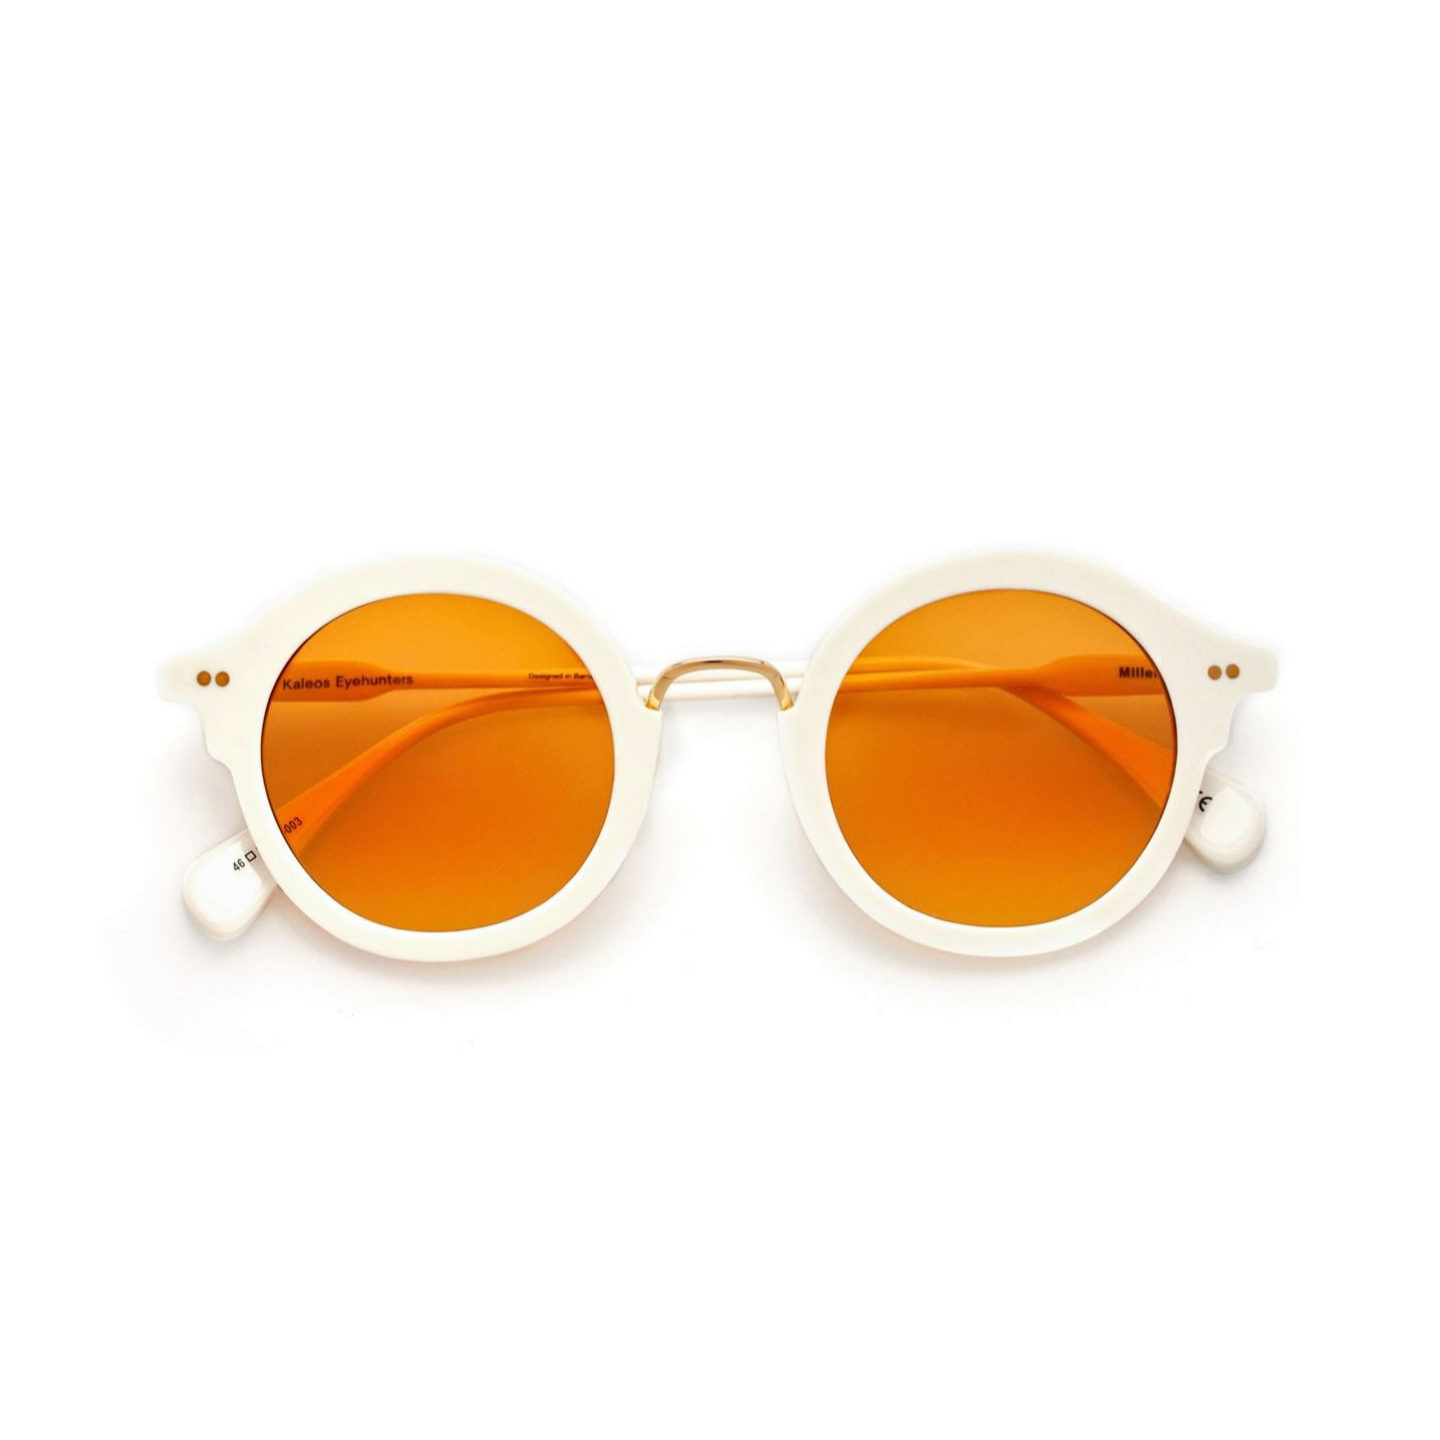 Gafa de sol con aros de acetato monocolor blanco y lentes en color naranja de Kaleos Eyehunters (170)